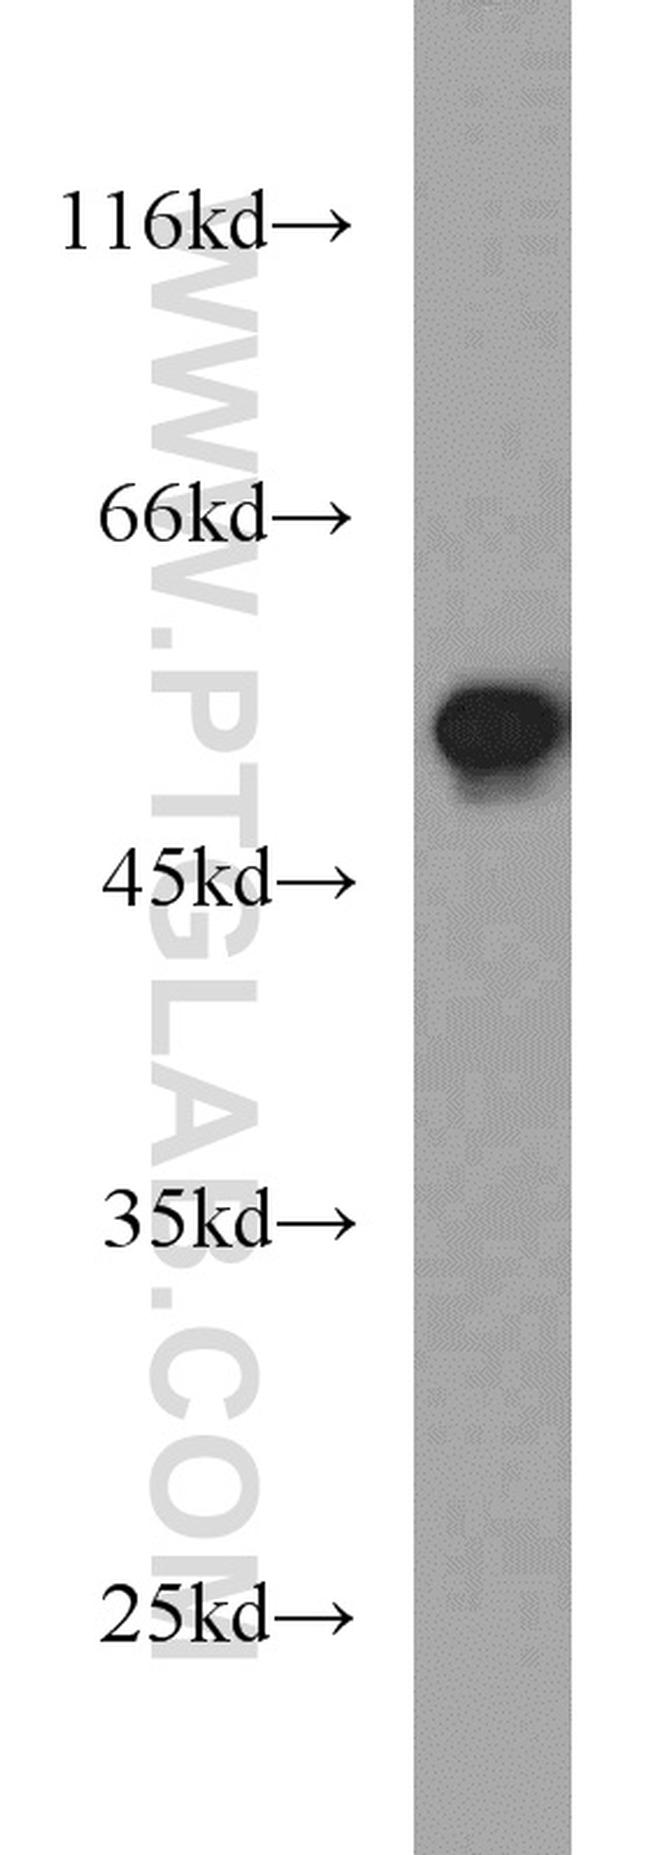 FAF2 Antibody in Western Blot (WB)